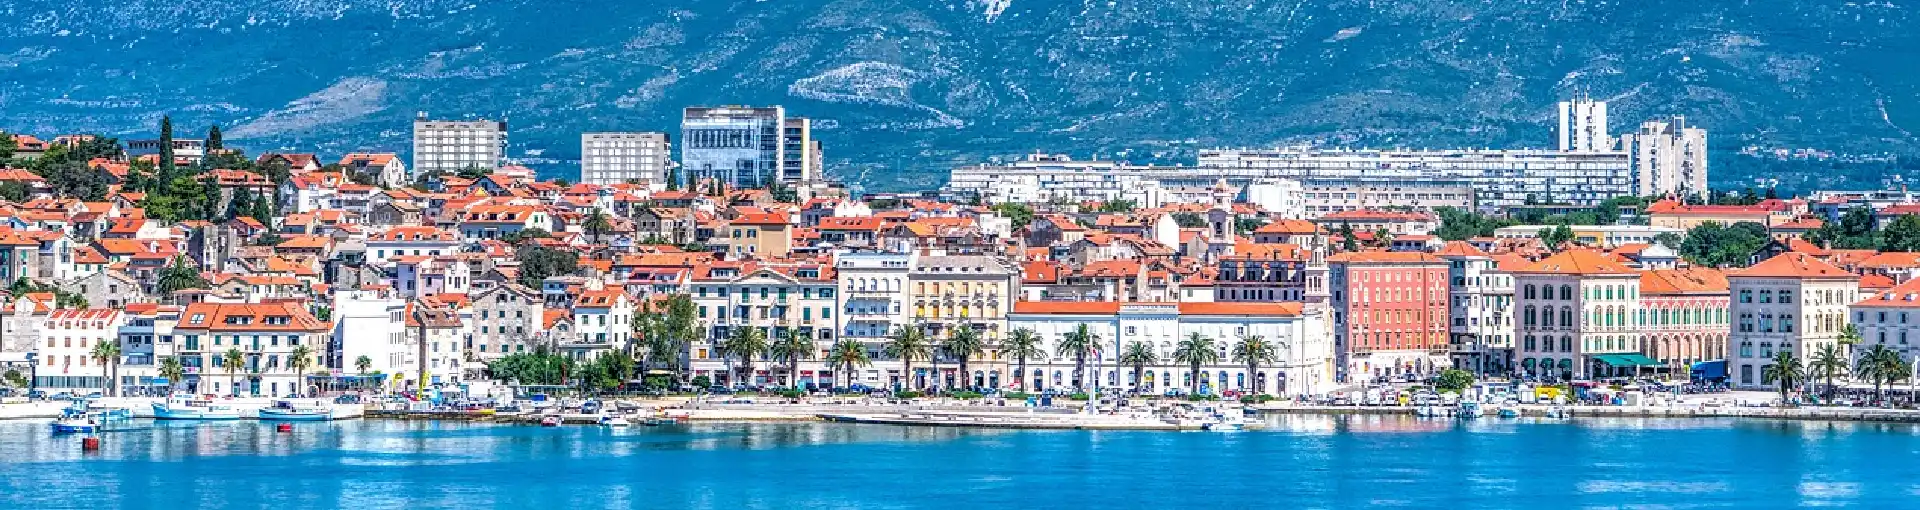 Split, Jadransko more, Hrvatska